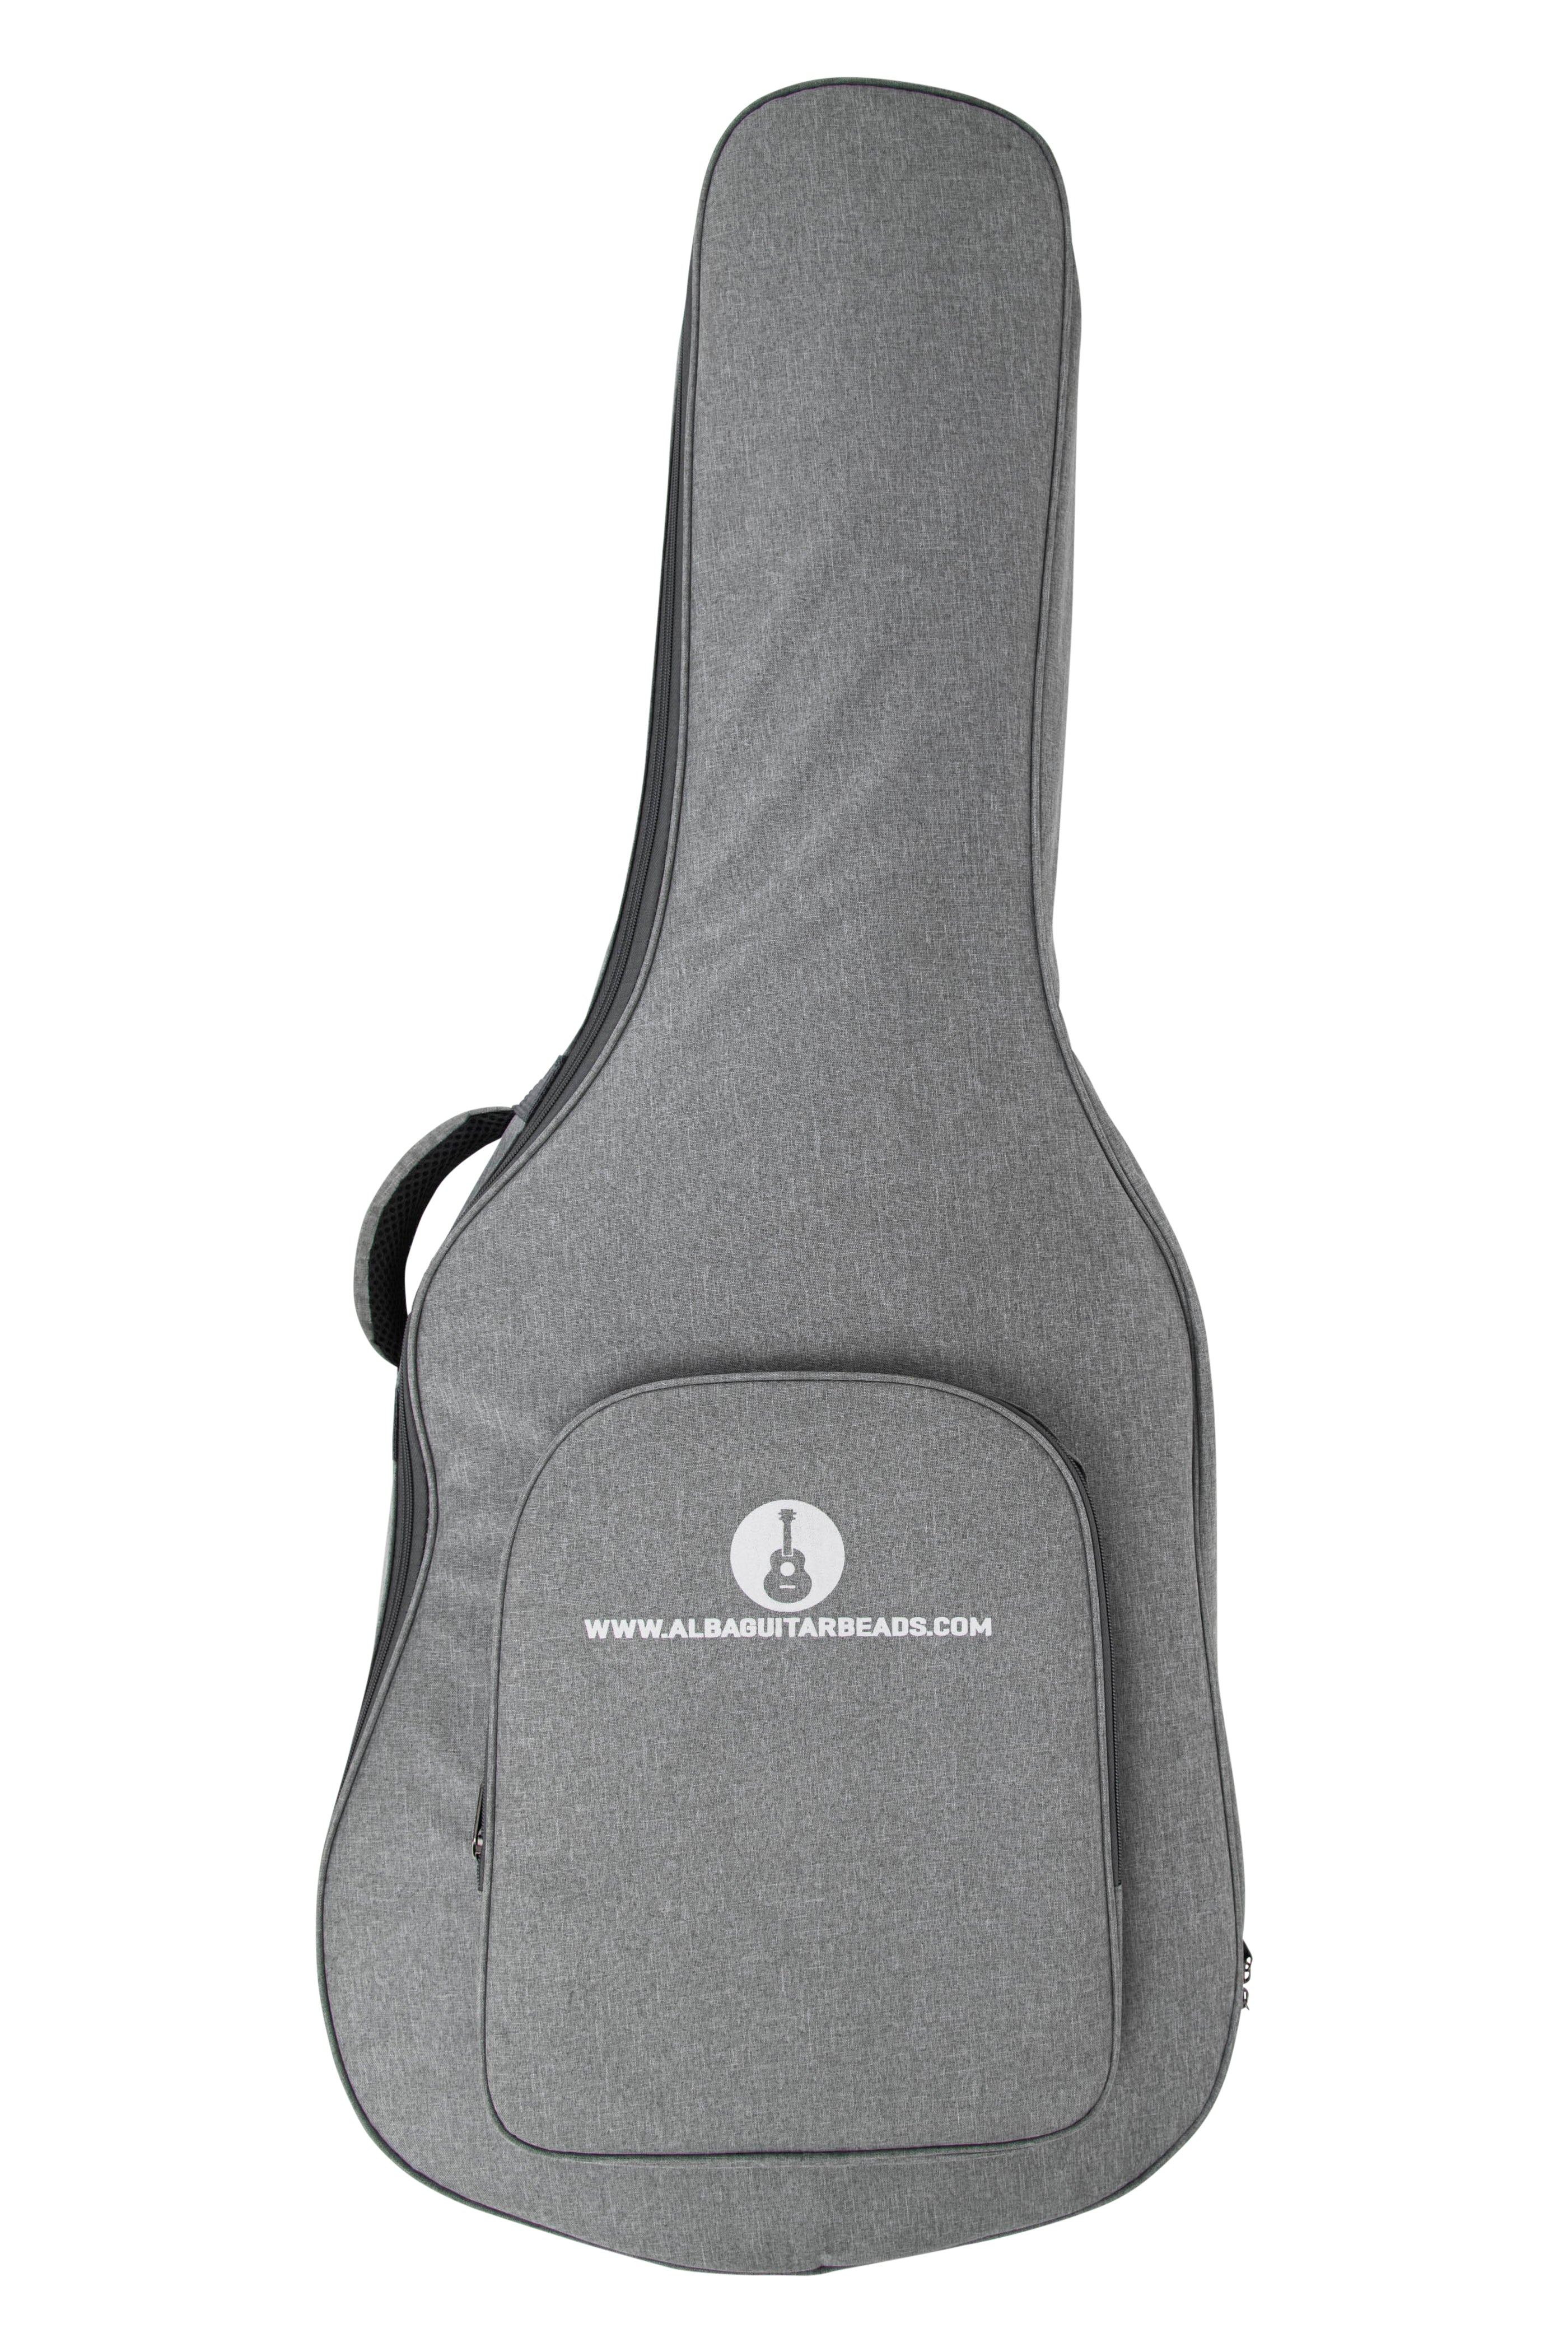 Alba Guitar Beads Schutzhülle für Carbon-Gitarrenkoffer, Reisehülle für klassische Gitarren und Flamenco-Gitarren-Carbonkoffer